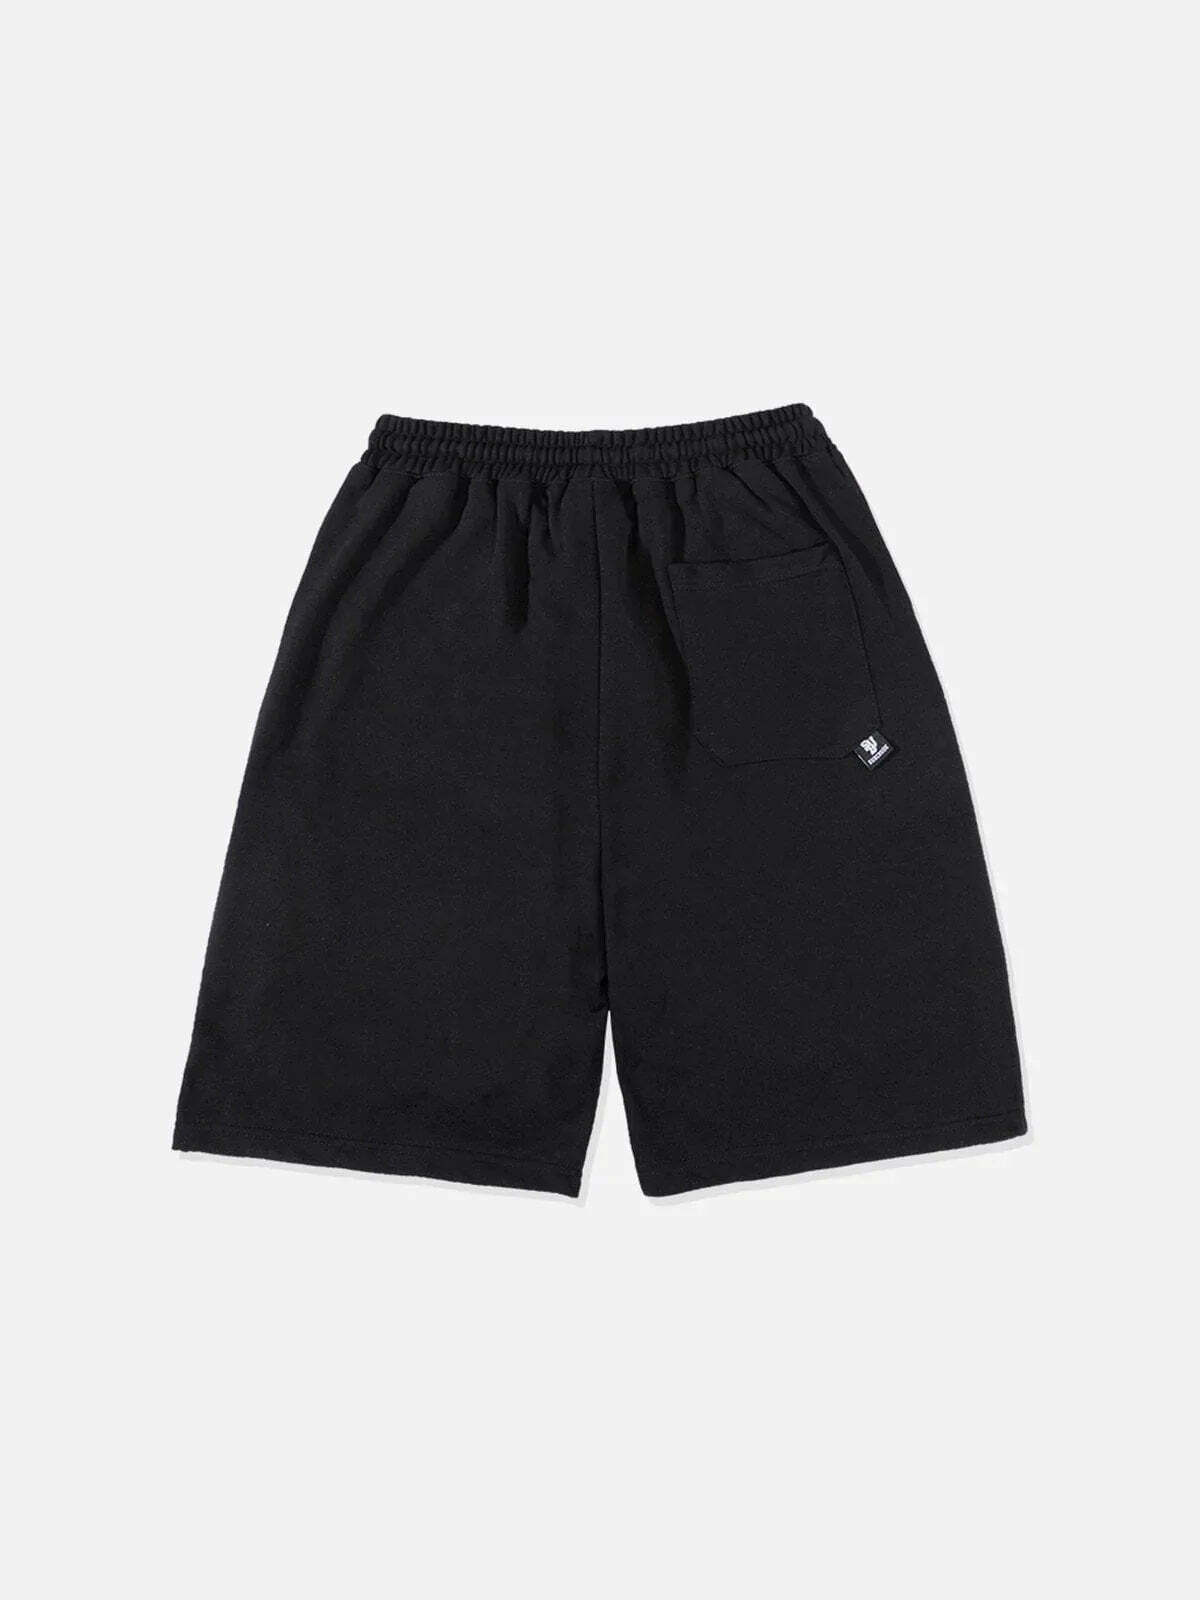 dynamic multipocket drawstring shorts urban streetwear essential 3114